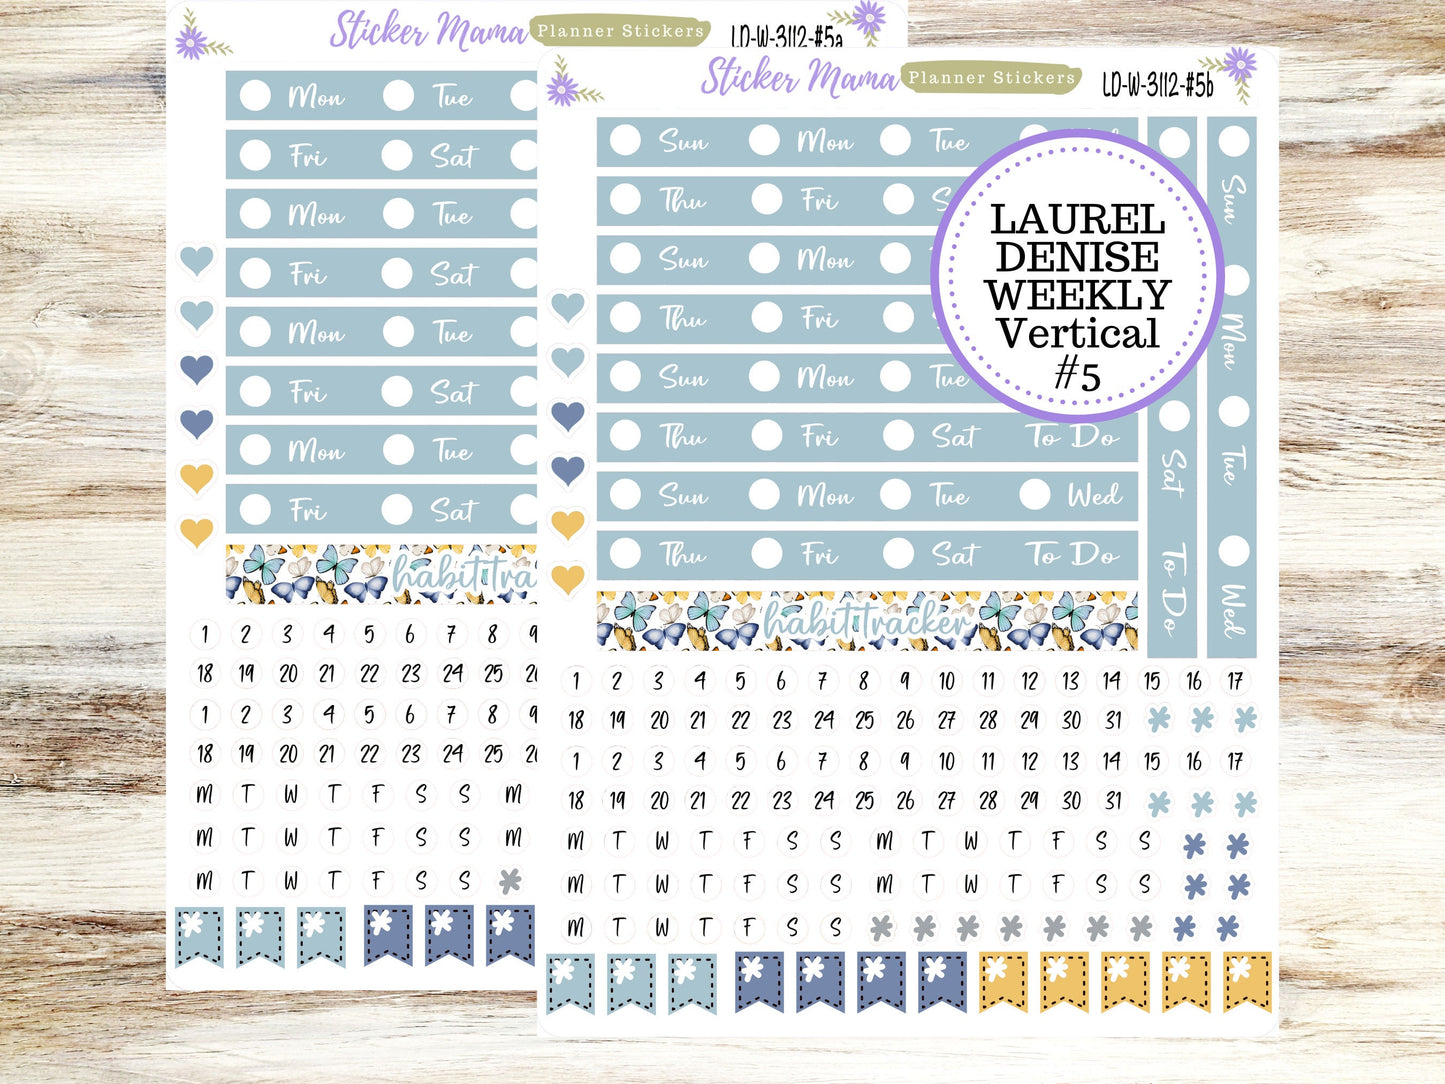 LAUREL DENISE PLANNER Kit #3112 || Laurel Denise Kit || Laurel Denise Stickers || Laurel Denise Horizontal Vertical